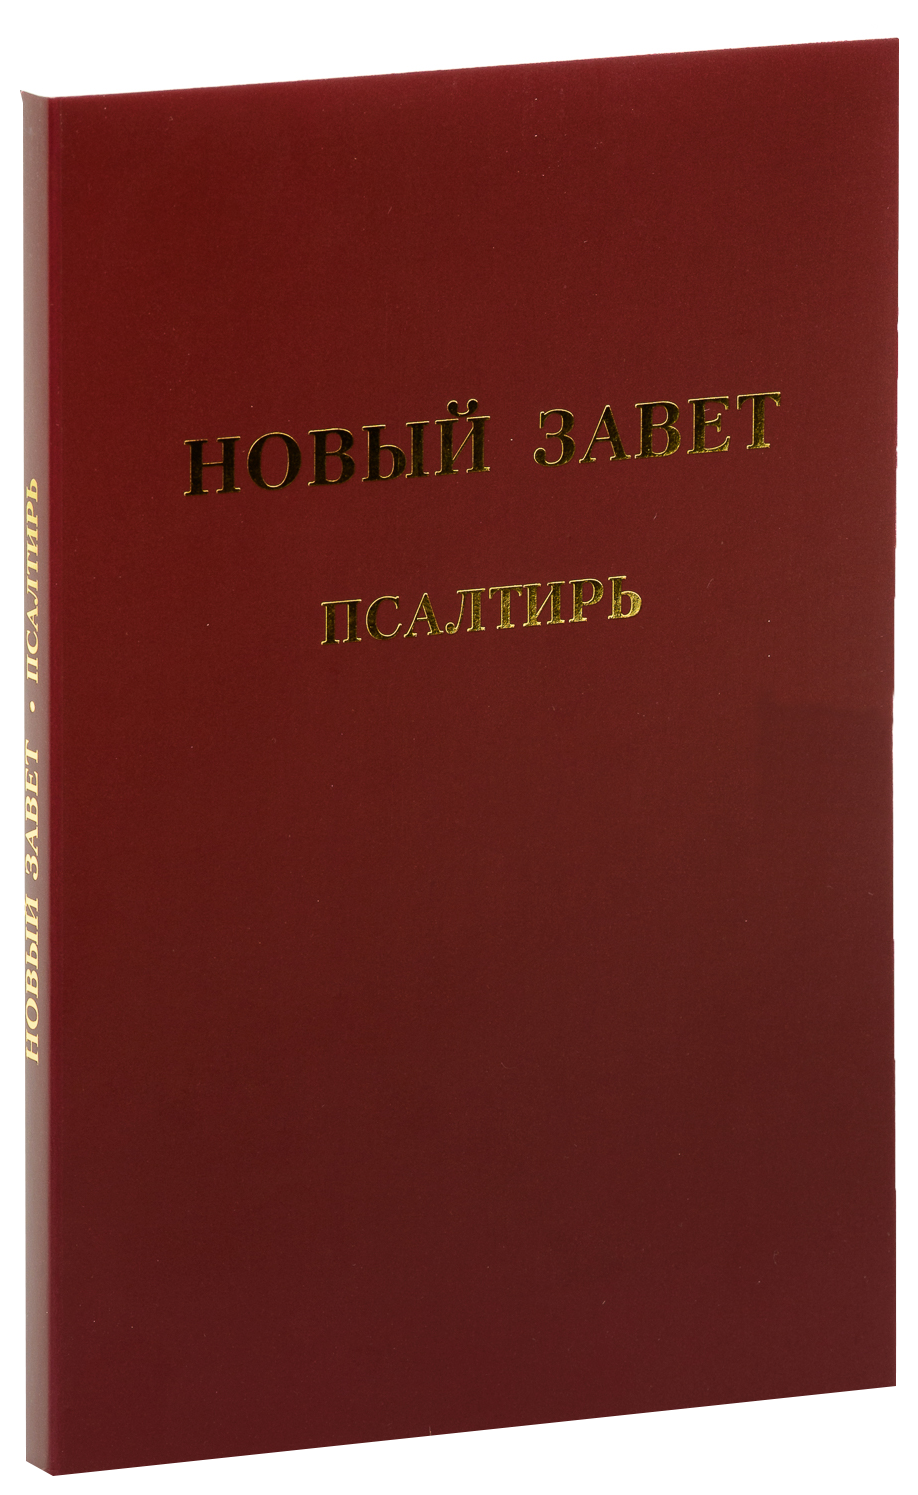 Das neue Testament mit Psalmen, Paperback - russisch